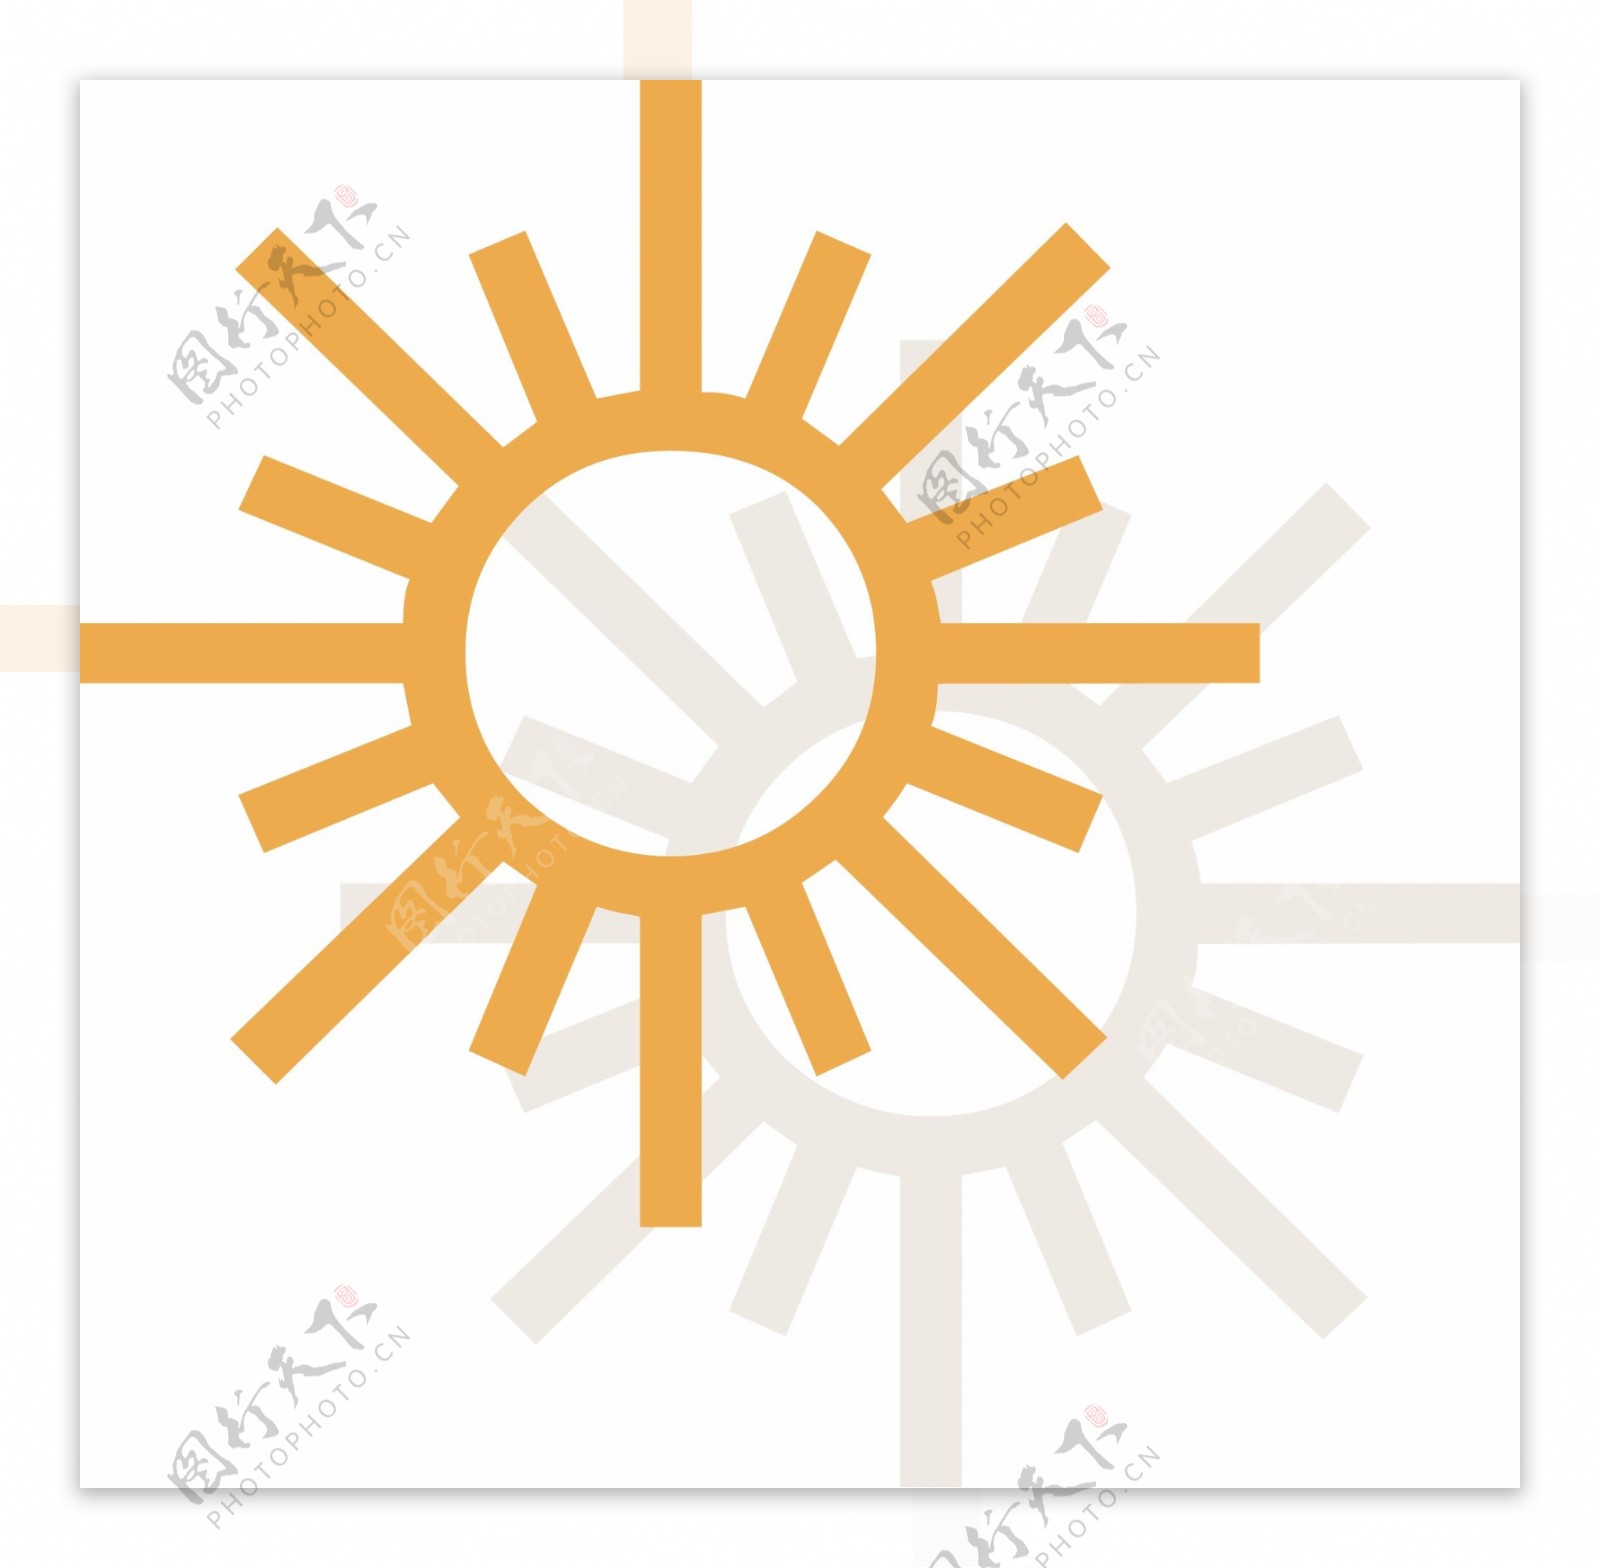 太阳天气图标